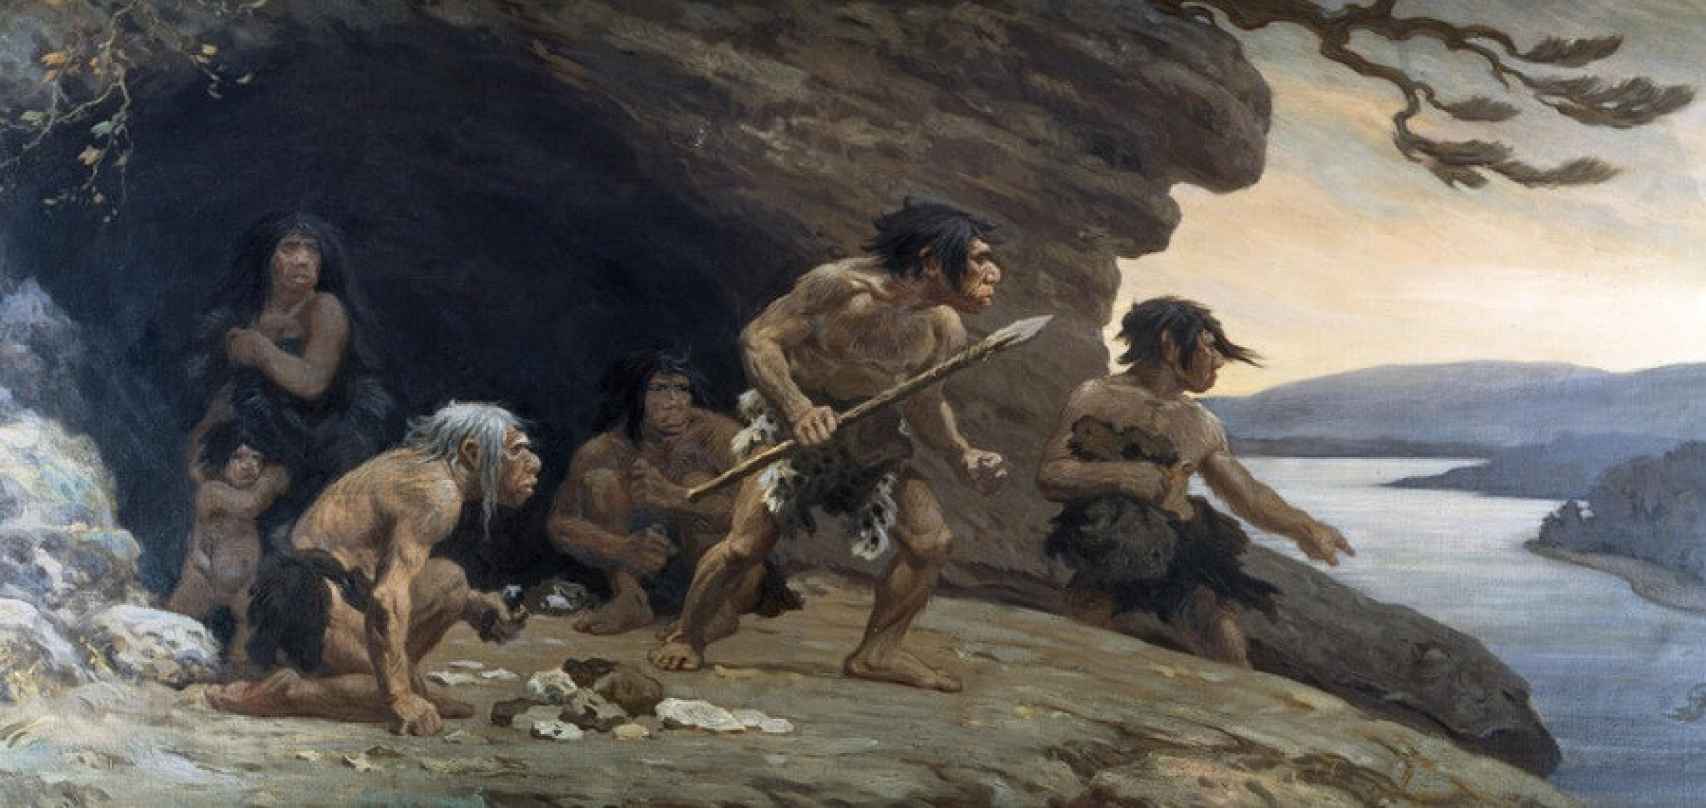 Recreación artística realizada por el pintor Charles R. Knight de una familia neandertal de Le Moustier.